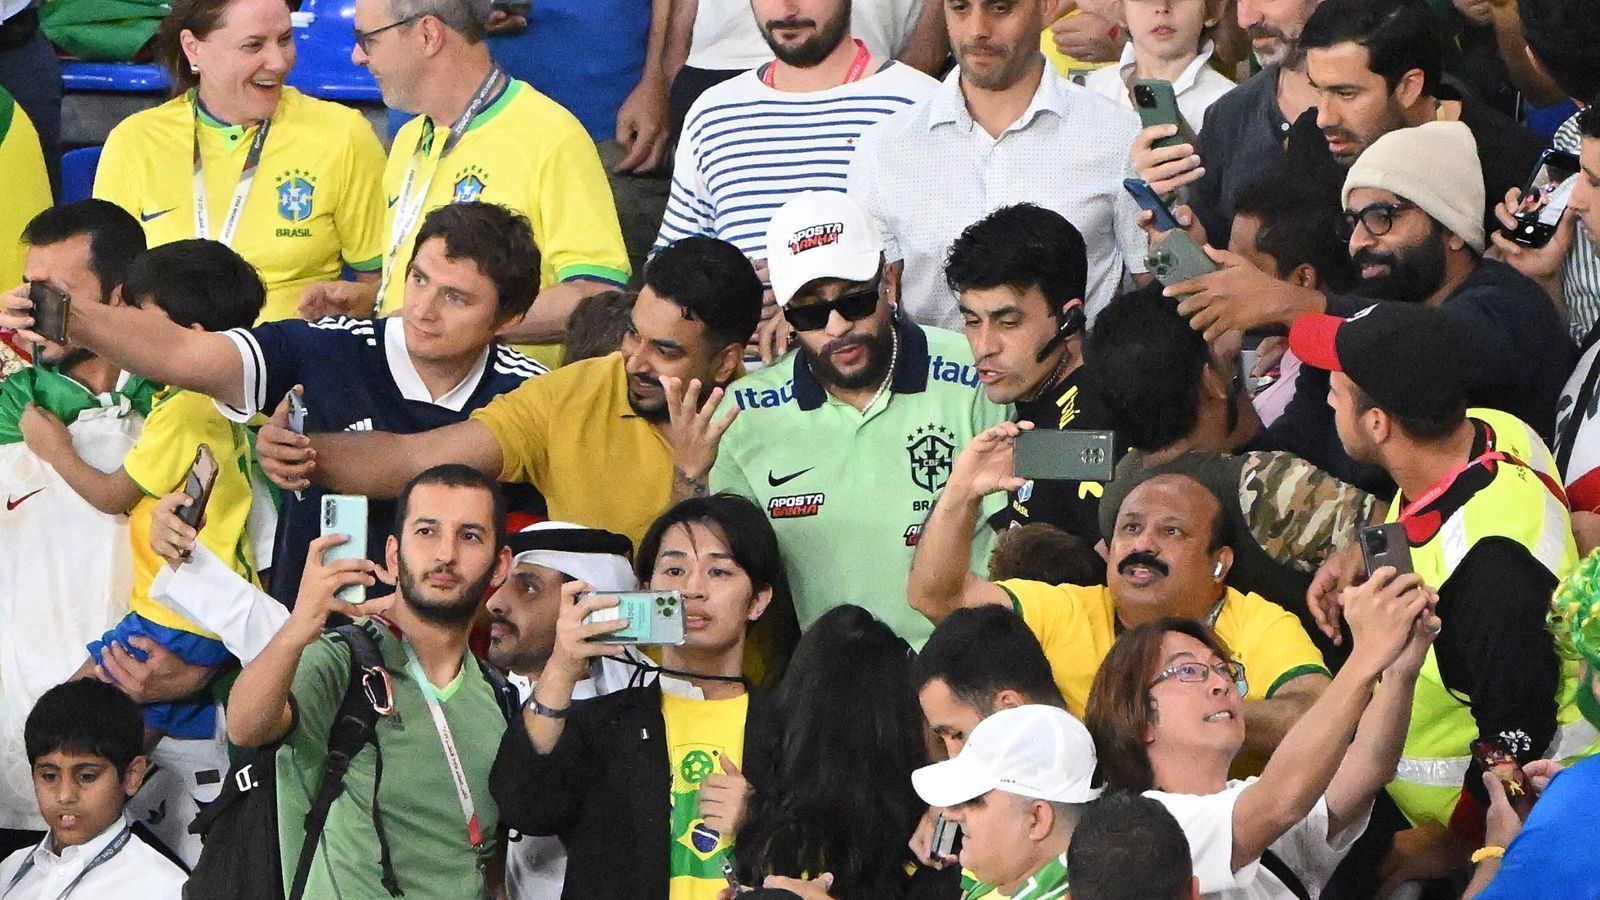 
                <strong>Neymar: Double des Superstars macht Brasiliens Fans verrückt</strong><br>
                "Neymar 2" sieht dem echten Neymar bei einem flüchtigen Blick tatsächlich zum Verwechseln ähnlich. Er mischte sich wie selbstverständlich unter das Volk.
              